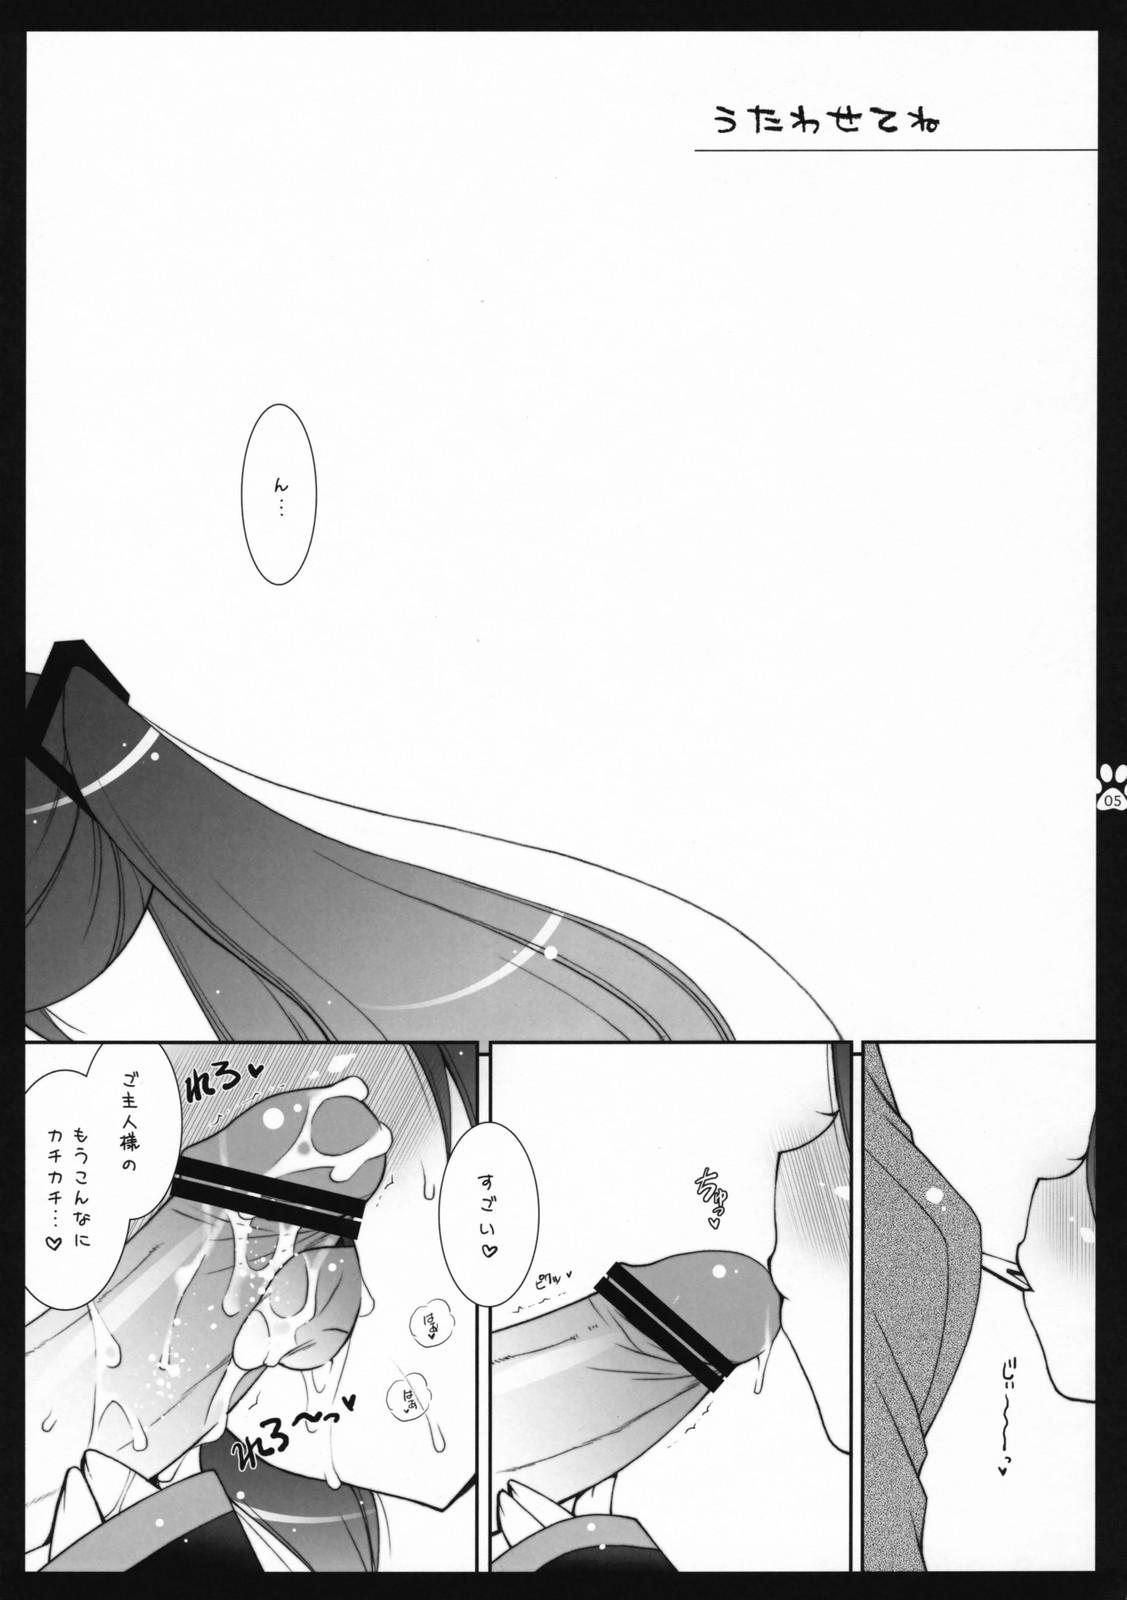 Mommy Utawasetene - Vocaloid Stockings - Page 4